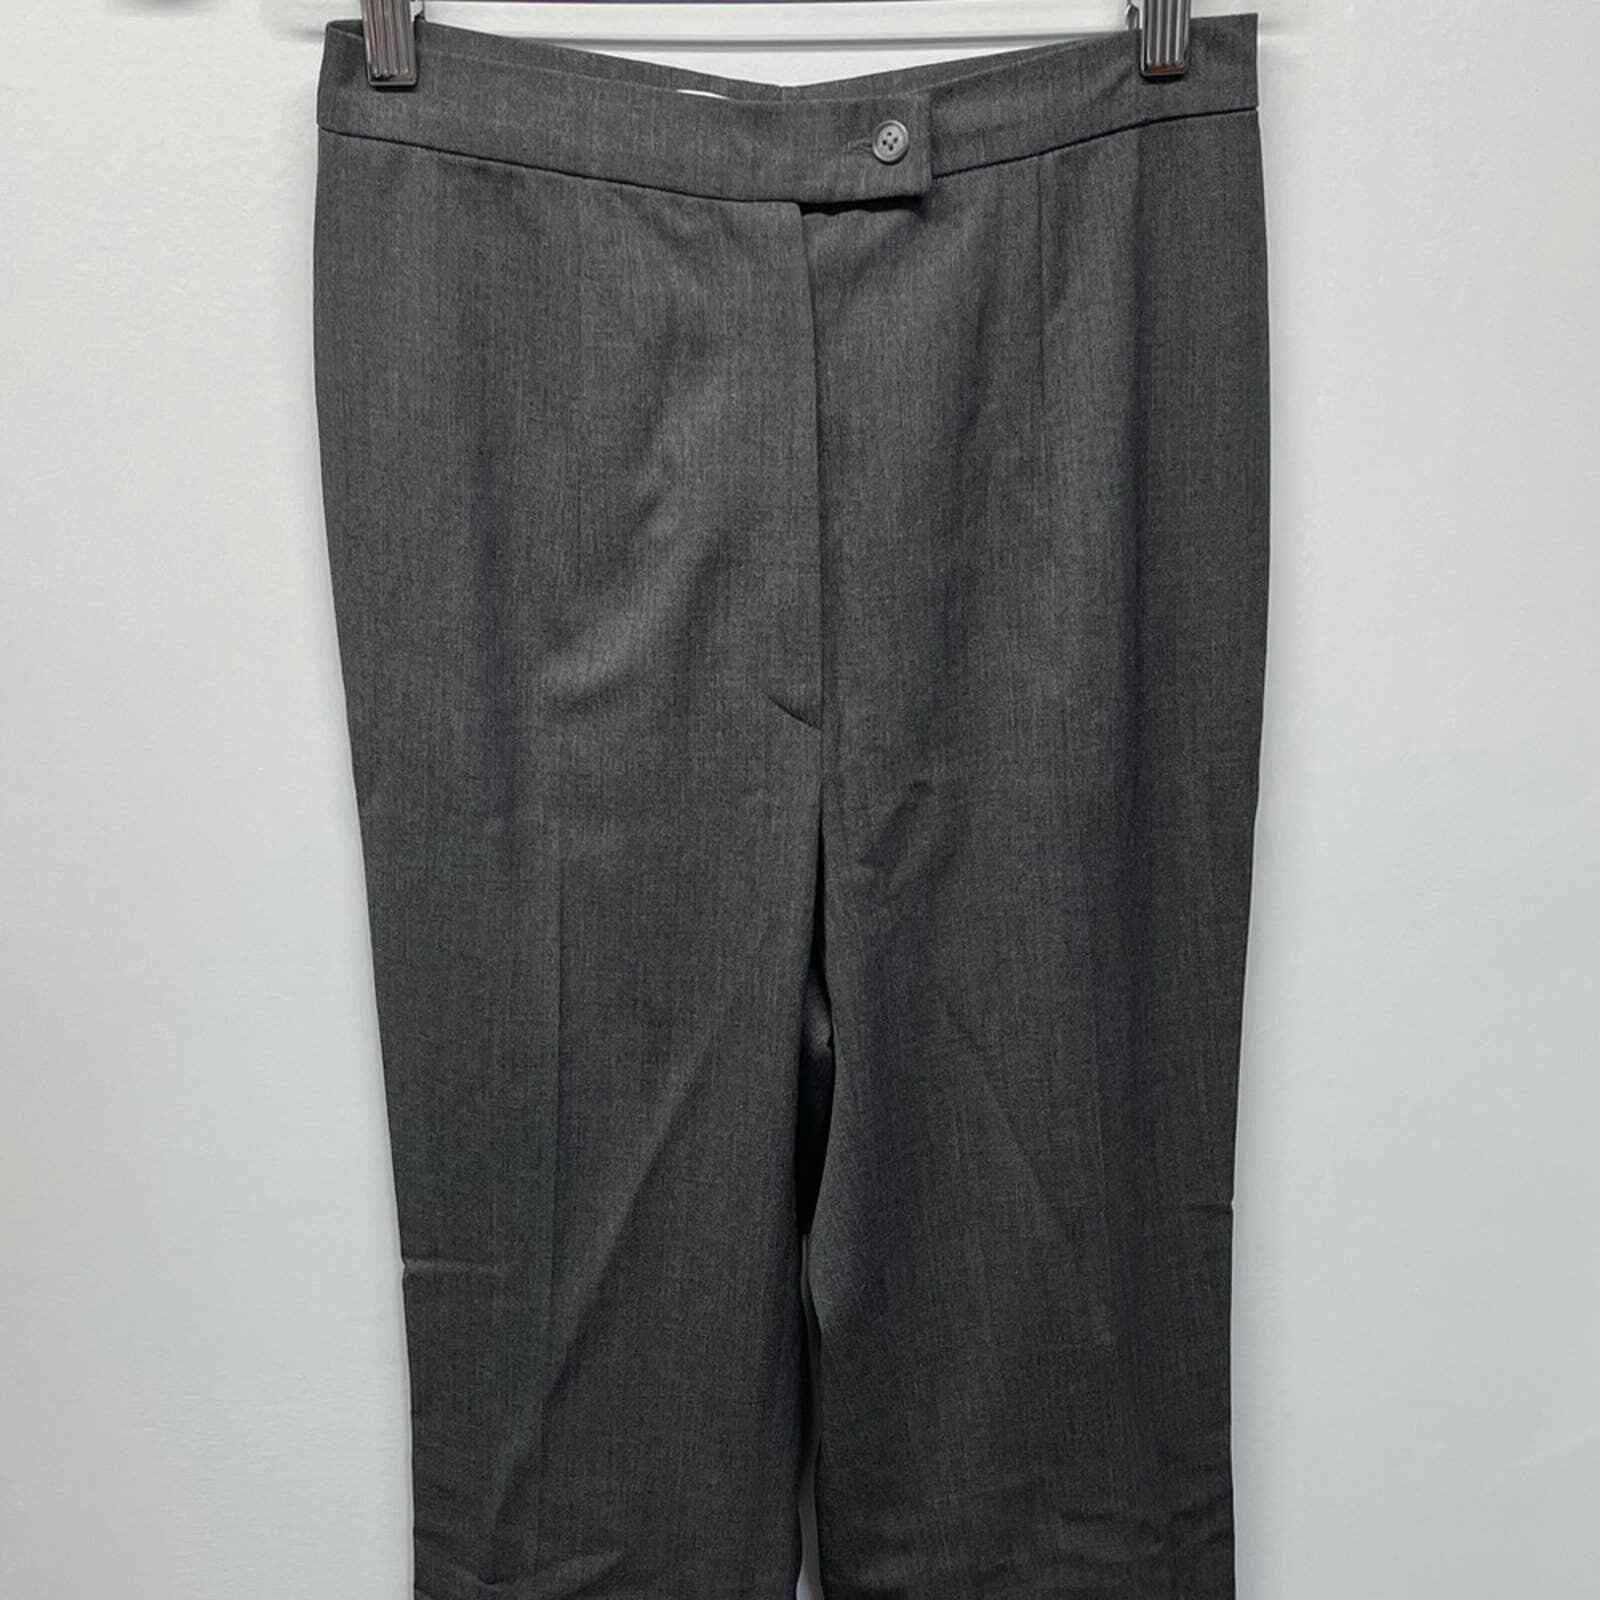 Jil Sander Wool Trouser Dress Pants Gray Size 38 - image 2